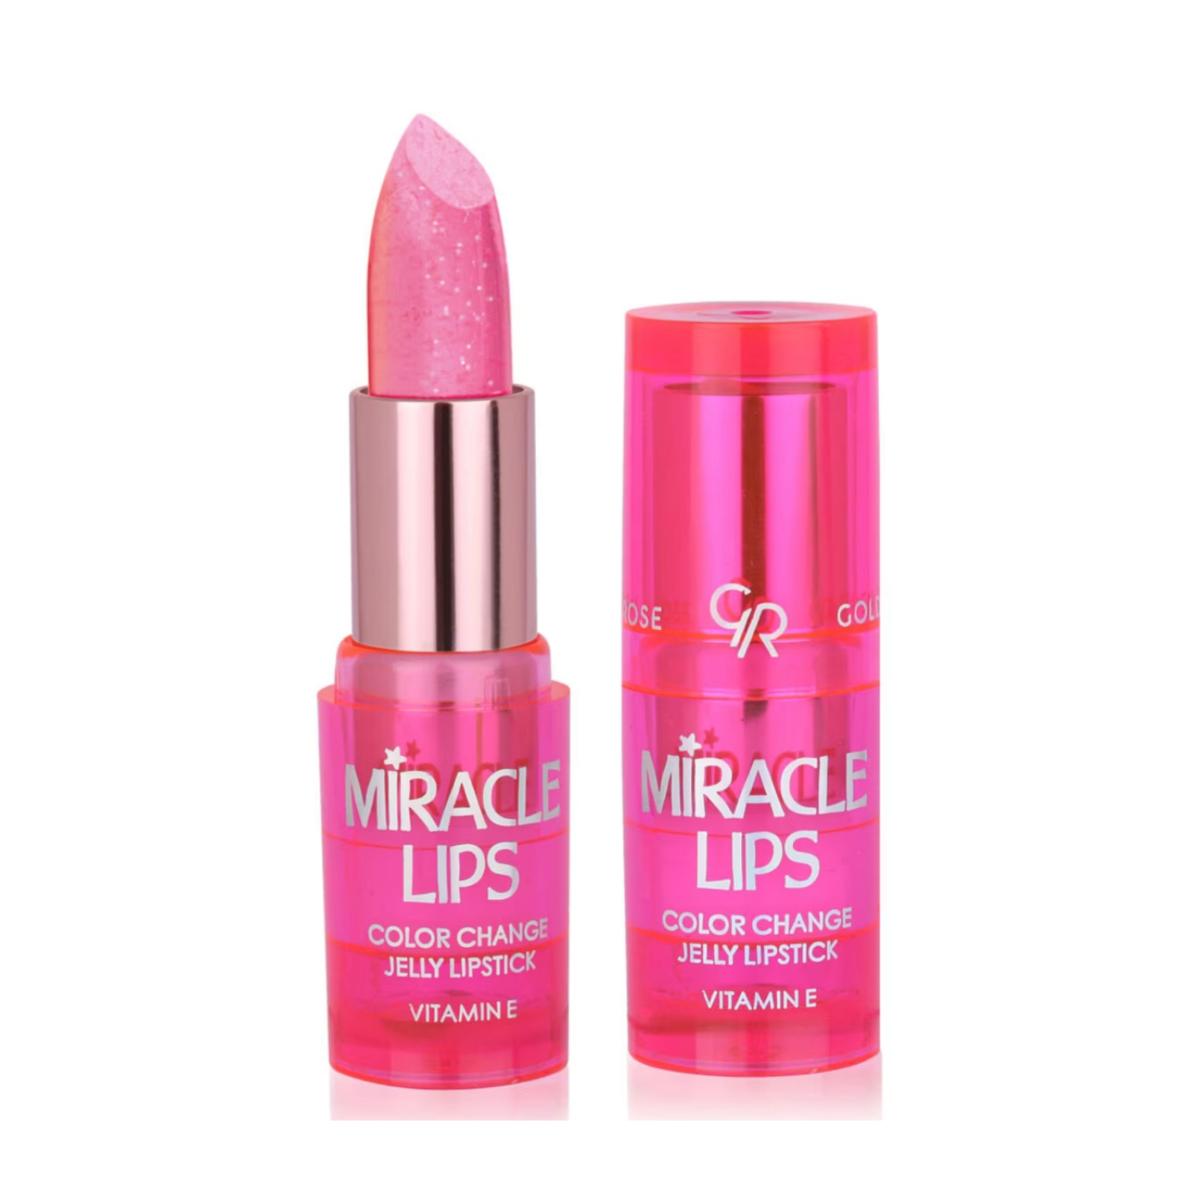 رژ لب تغییر دهنده لب میراکل لیپس - Color change jelly lipstick 